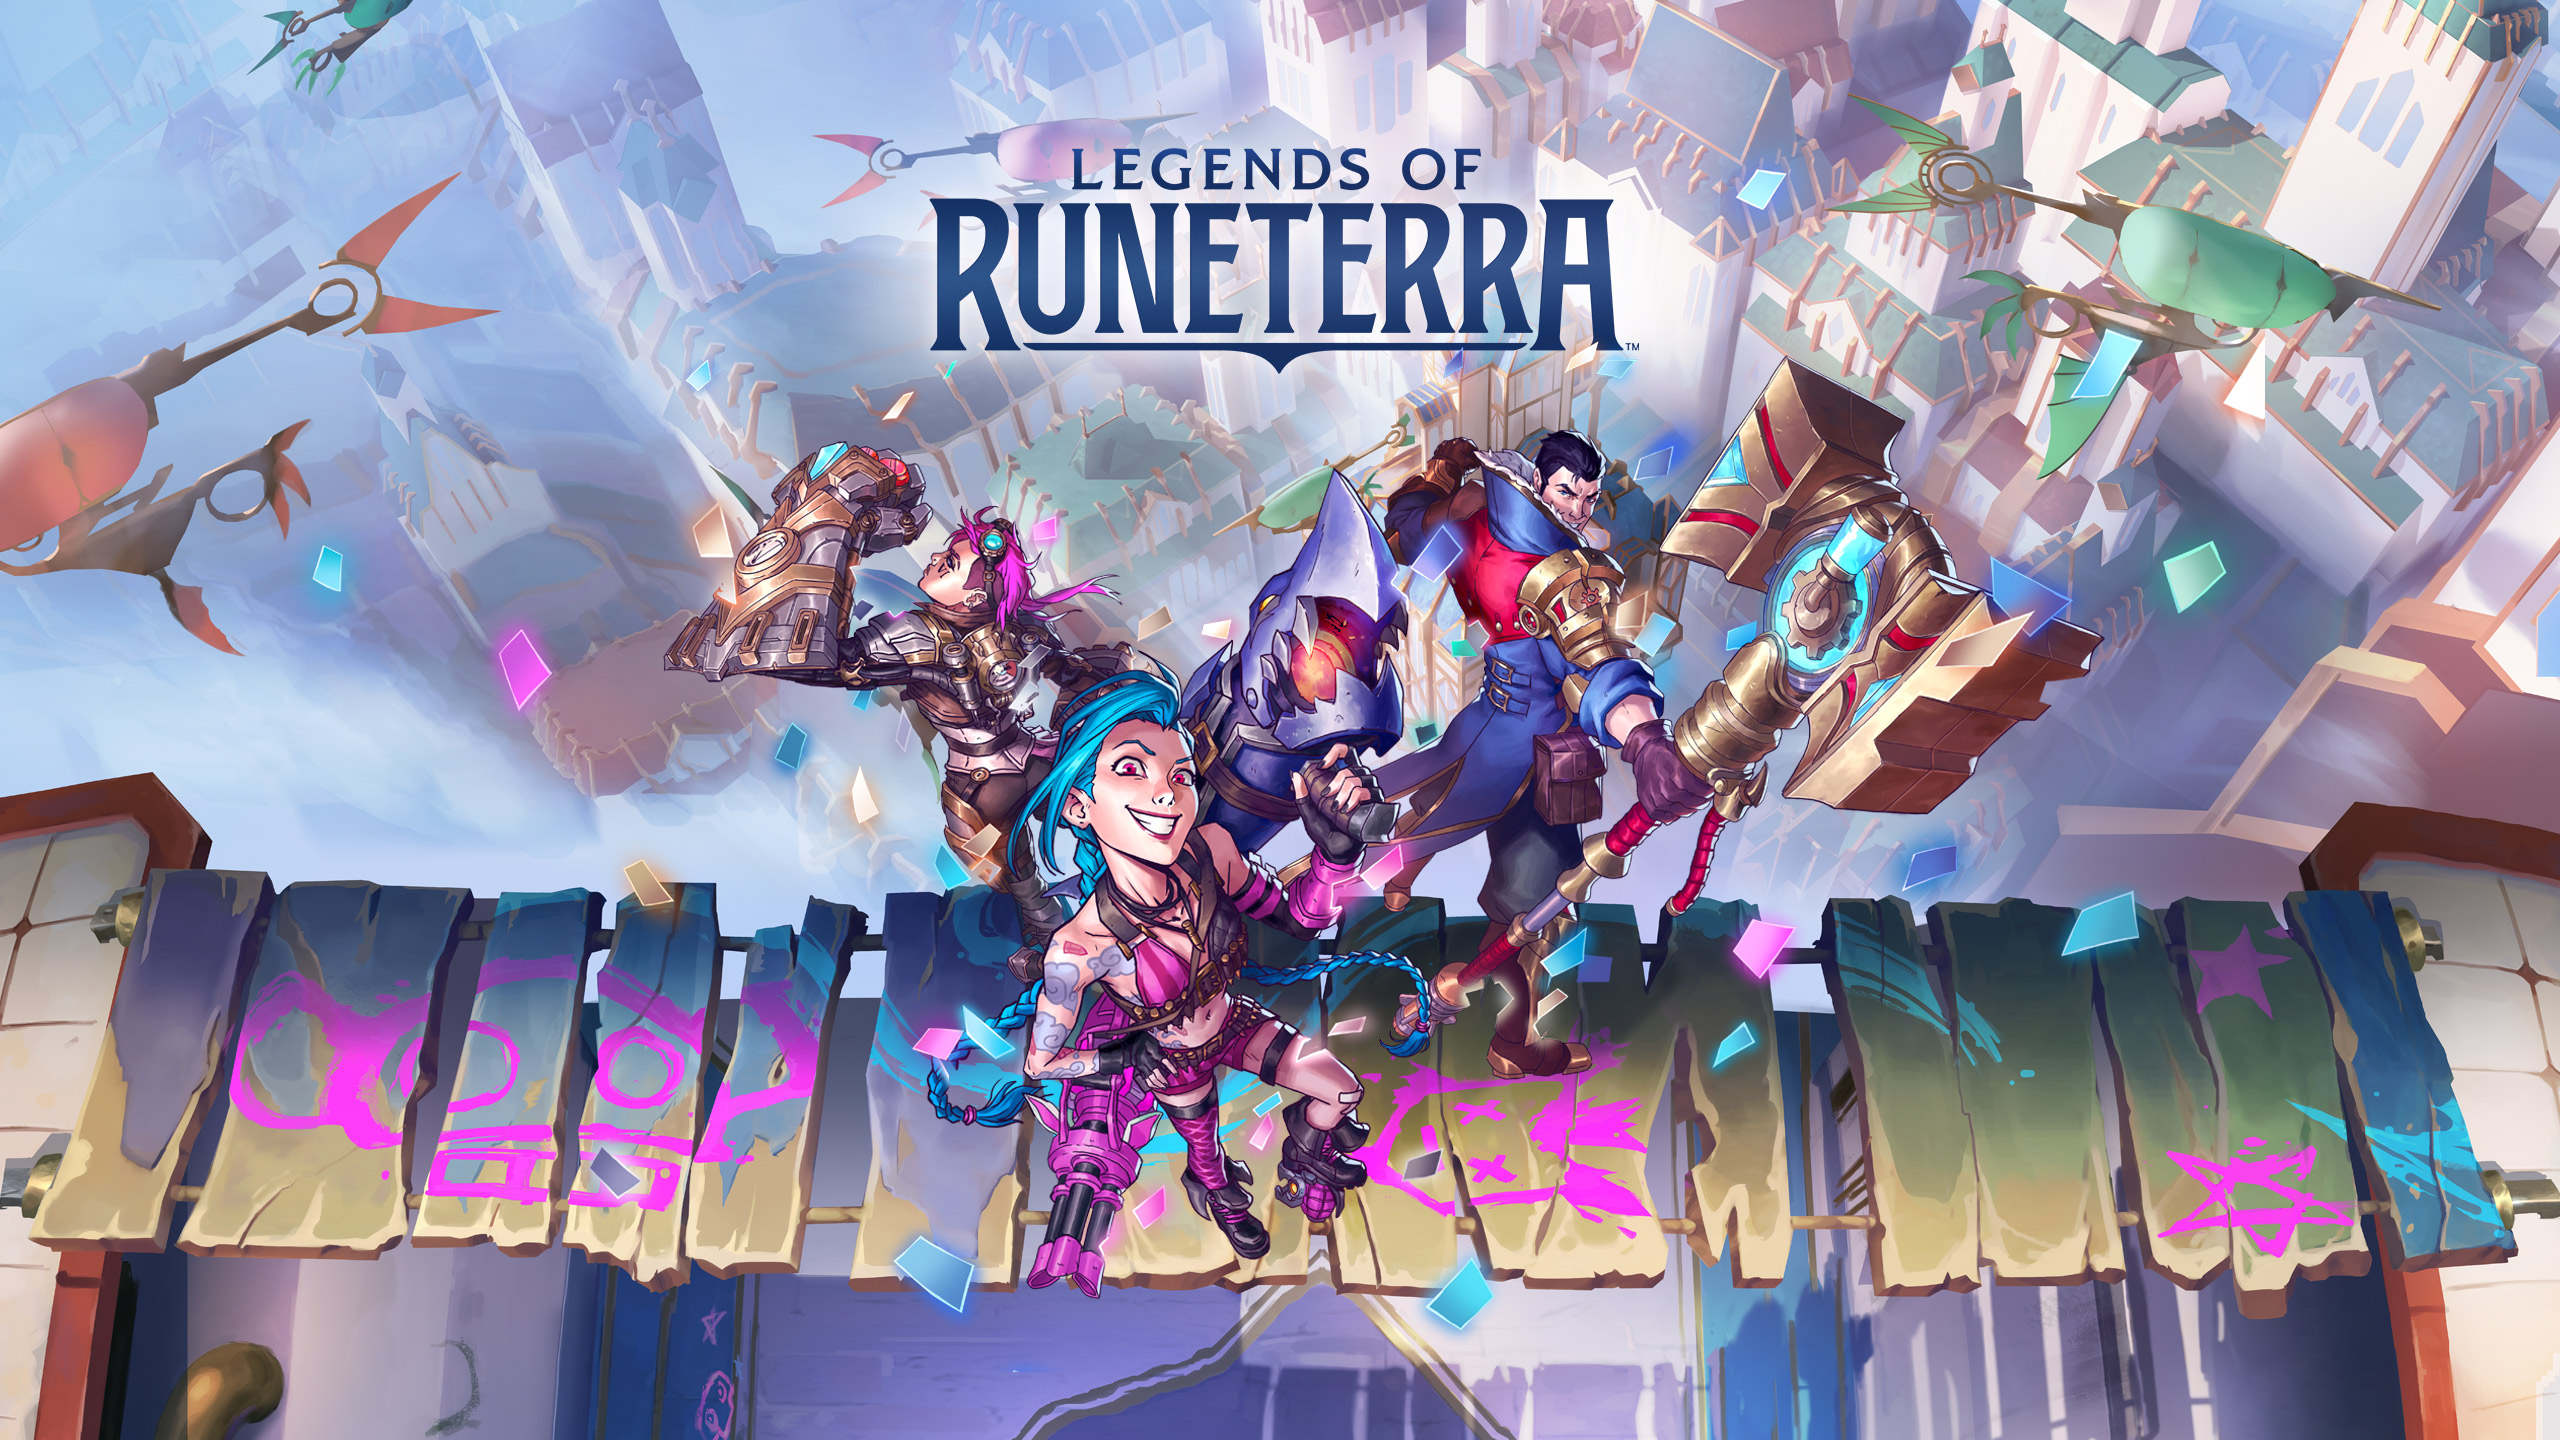 News • Legends of Runeterra (LoR) •